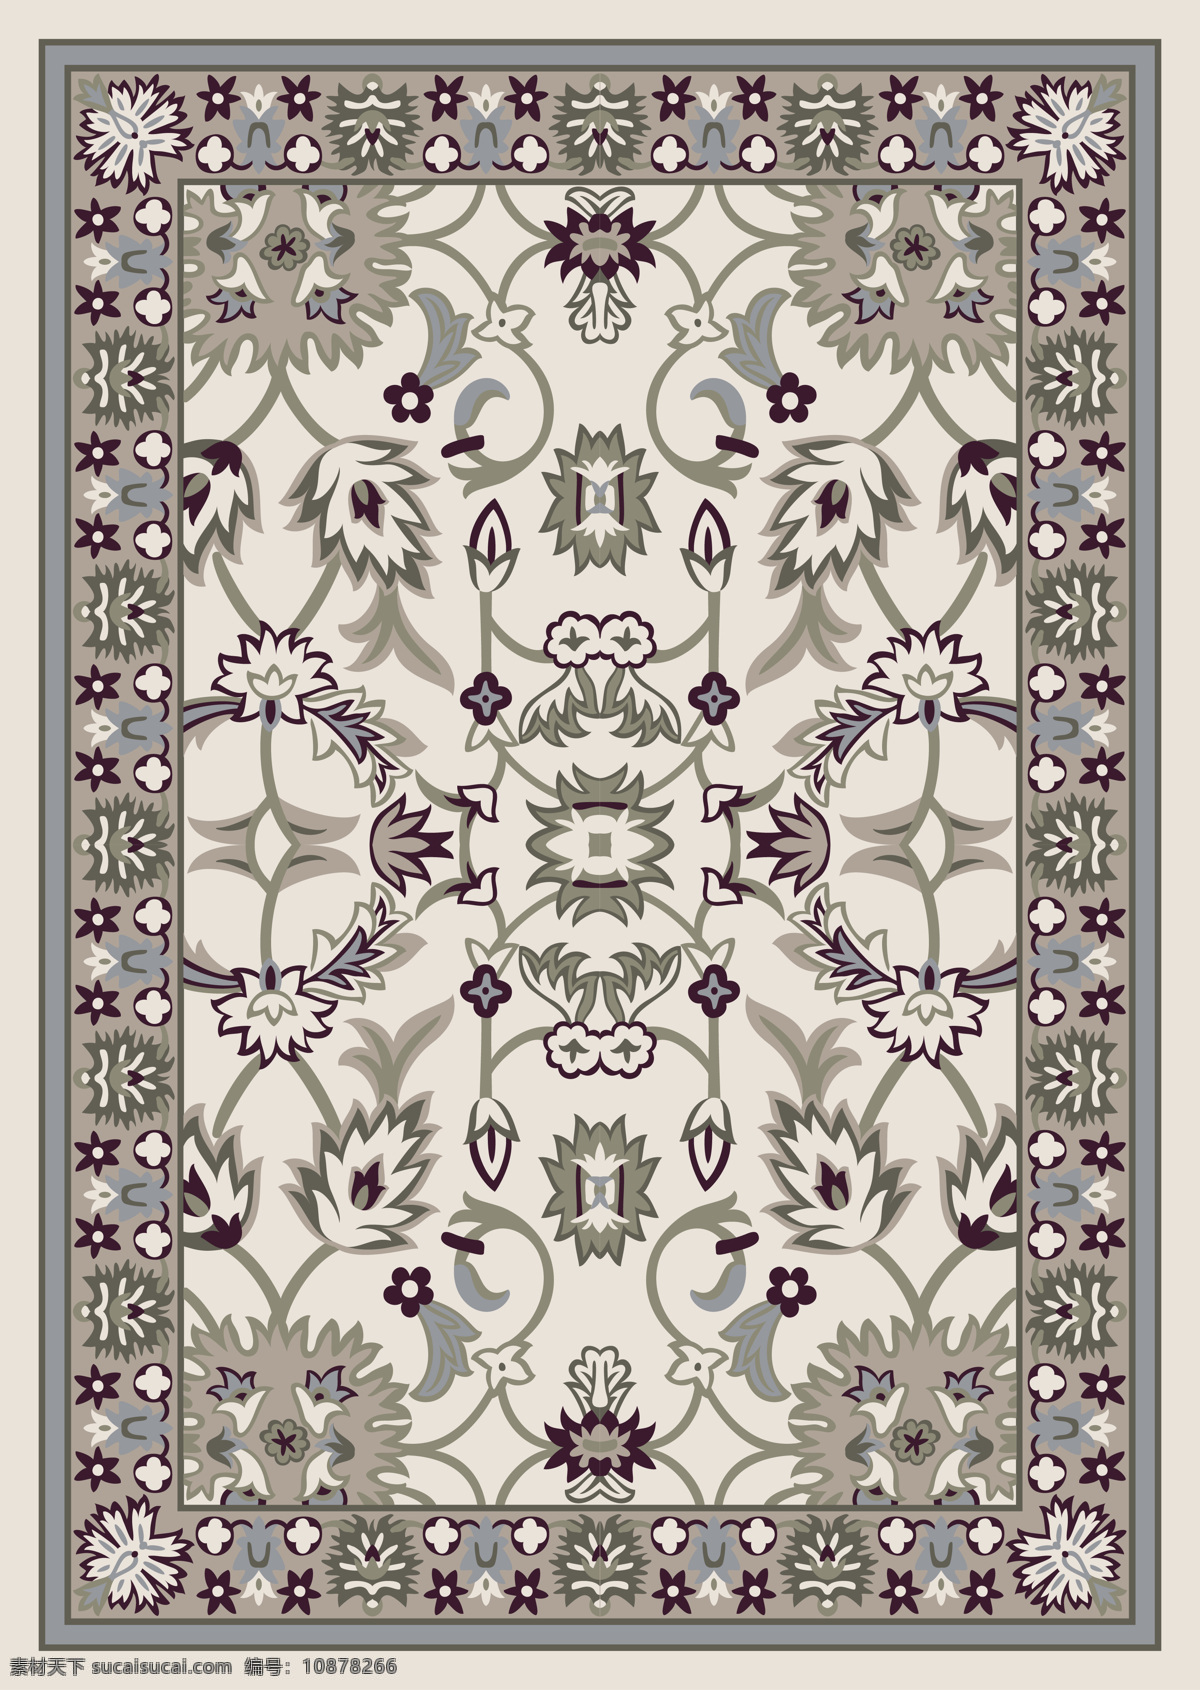 地毯设计 地毯图案 边花 传统图案 外国传统图案 图案设计 花纹设计 图案 花边花纹 底纹边框